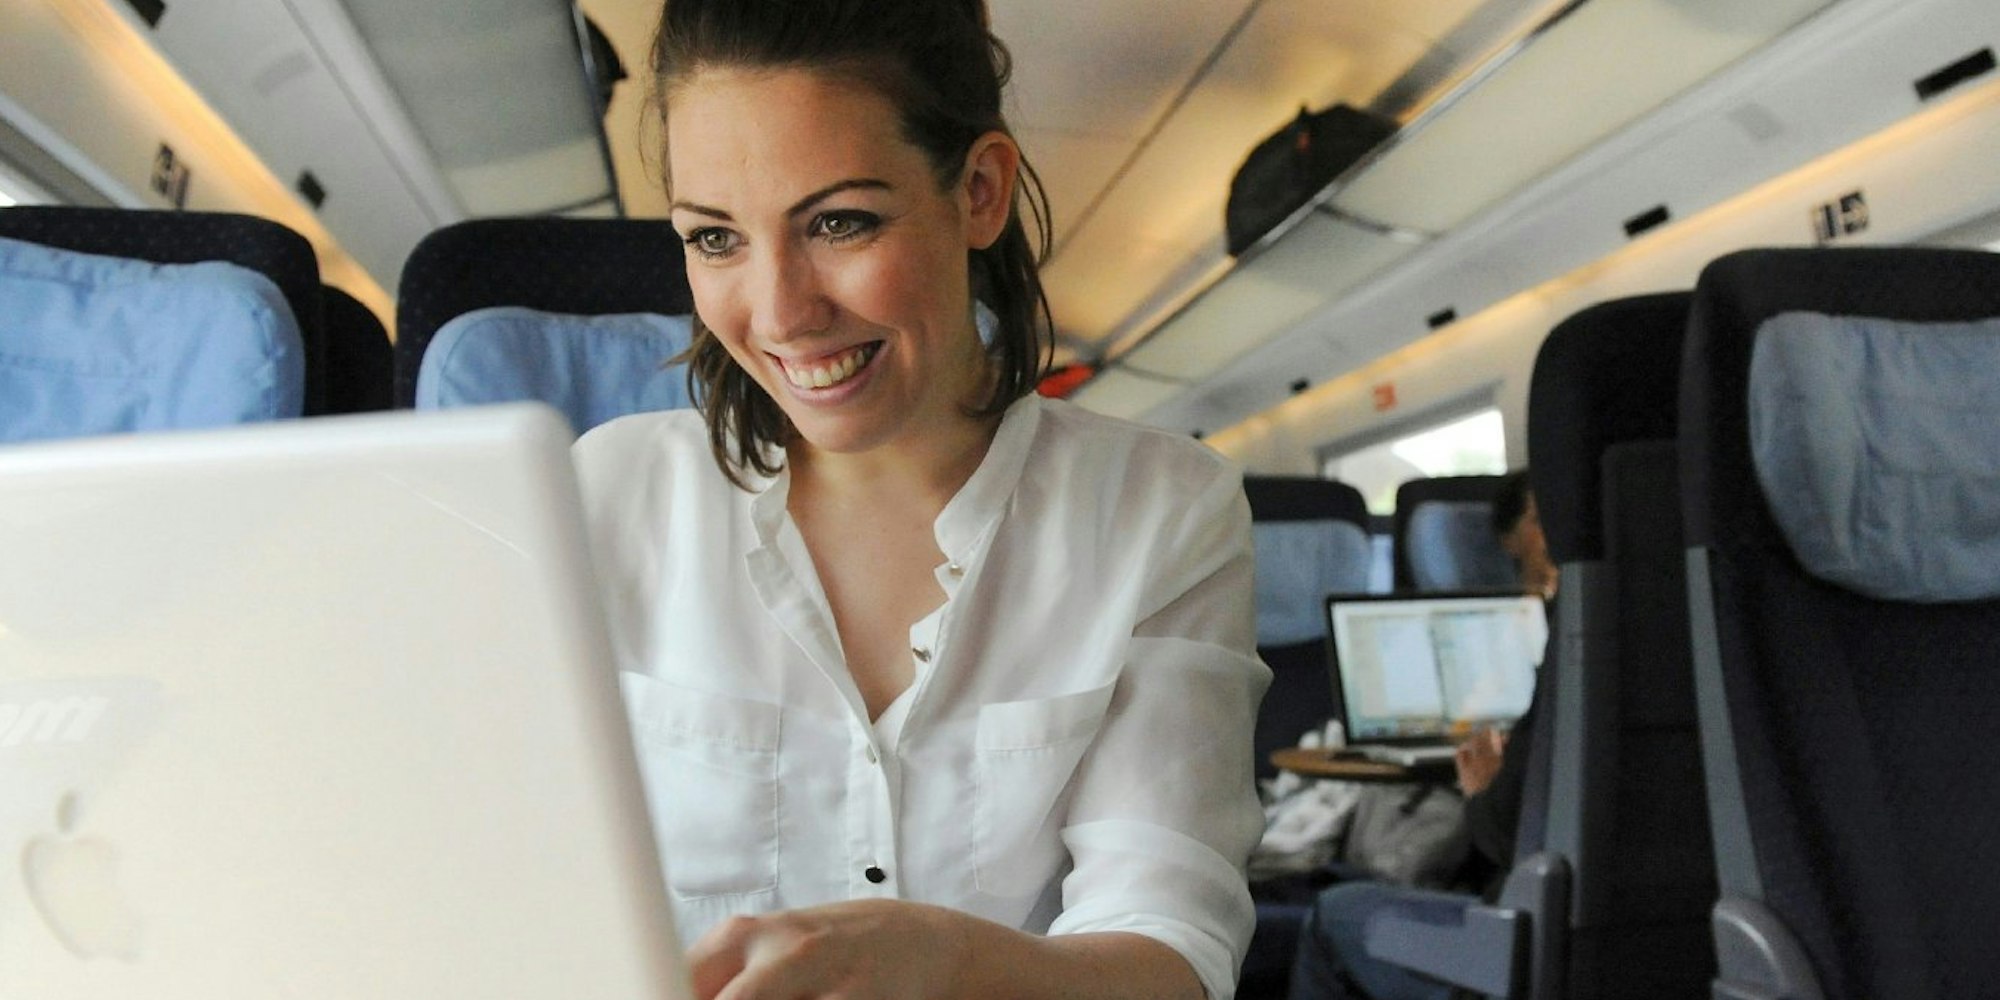 Steckdosen fürs Laptop oder Handy sind vielen Fahrgästen im Zug wichtig - ob und wo es welche gibt, variiert je nach Fahrzeugtyp.